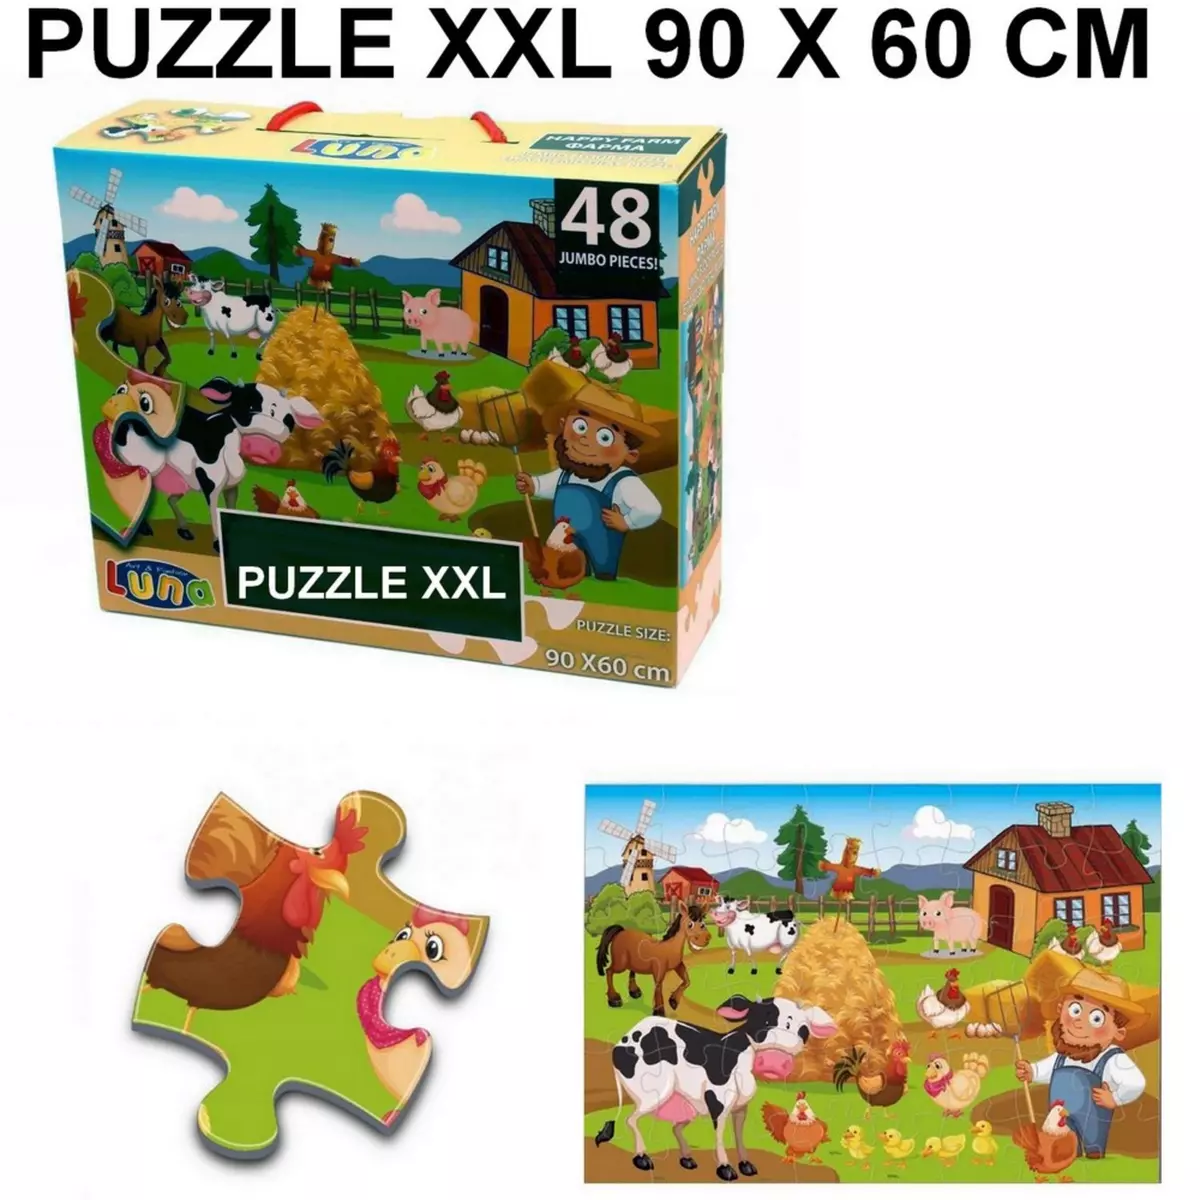  Puzzle geant 48 pieces La Ferme Poule Cochon Vache piece XL 60 x 90 cm